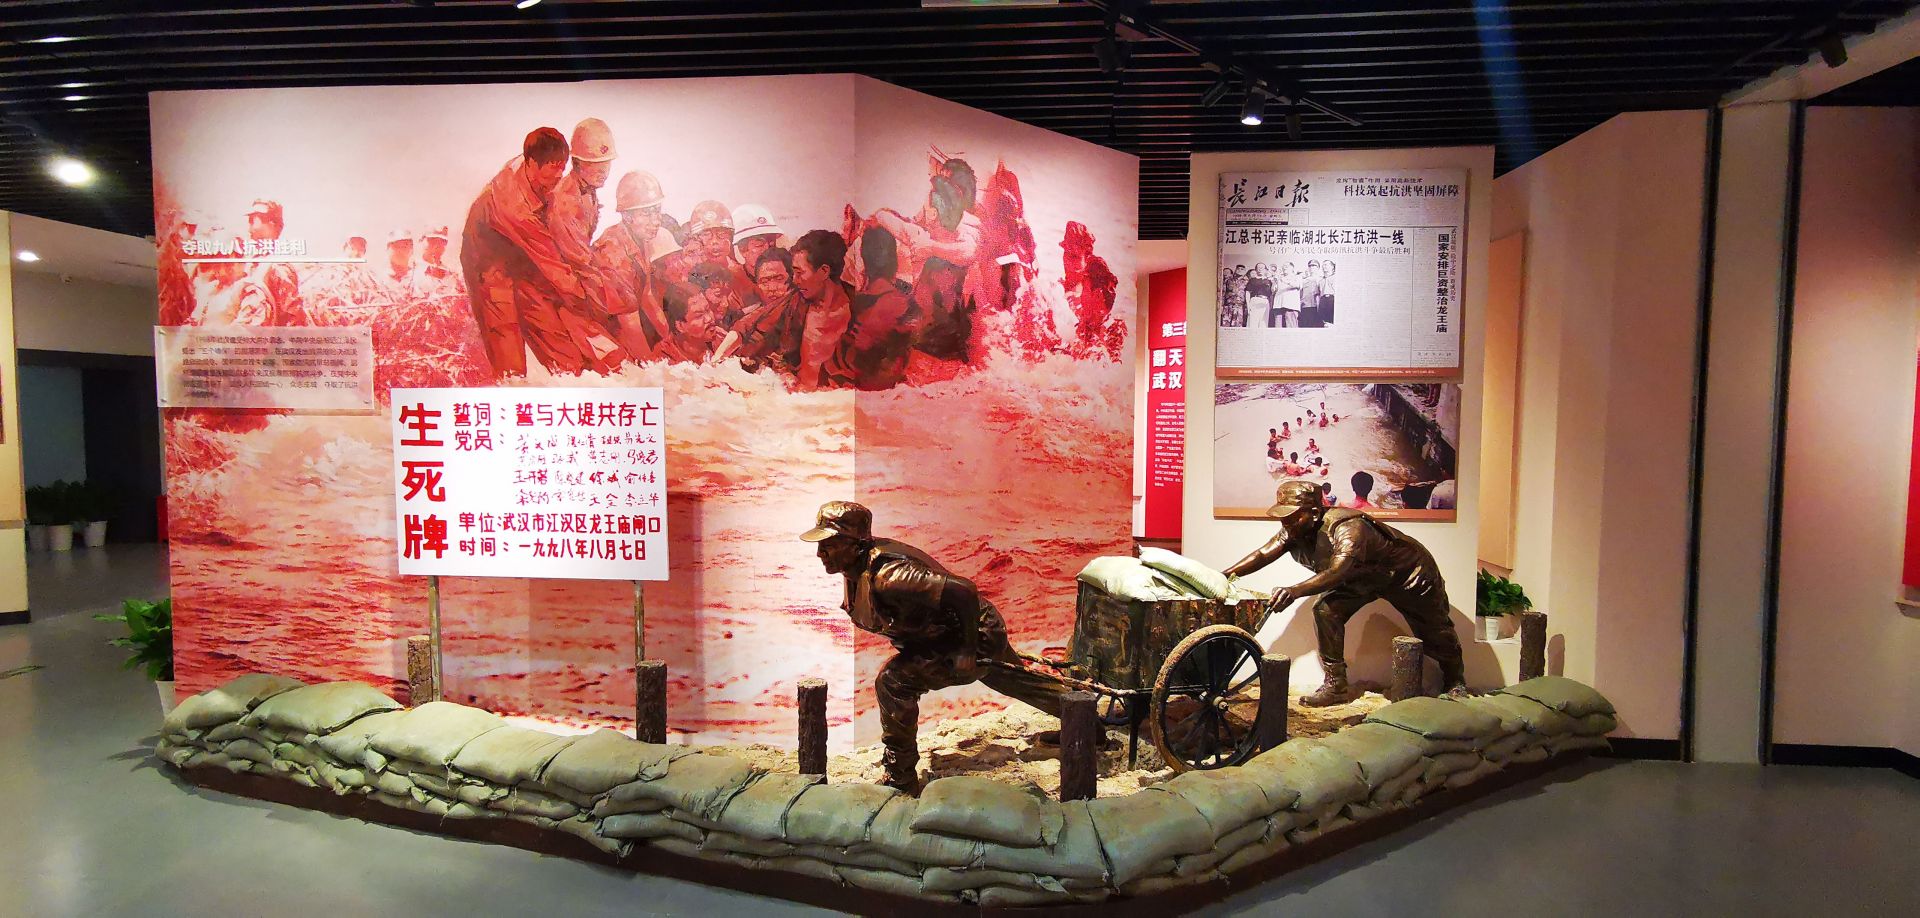 武汉市文化和旅游局共同主办,武汉革命博物馆承办的"英雄城市·百年